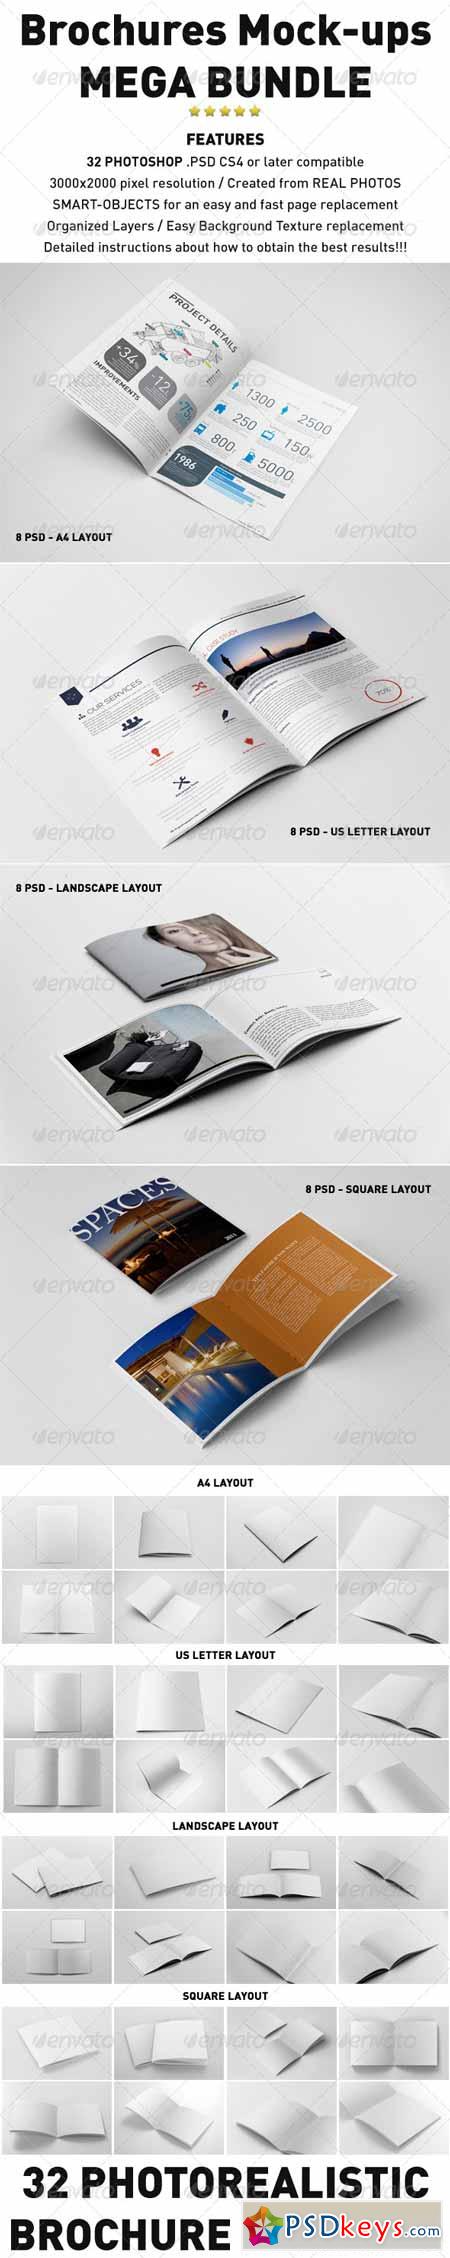 Photorealistic Brochures Mockups Bundle 6001281